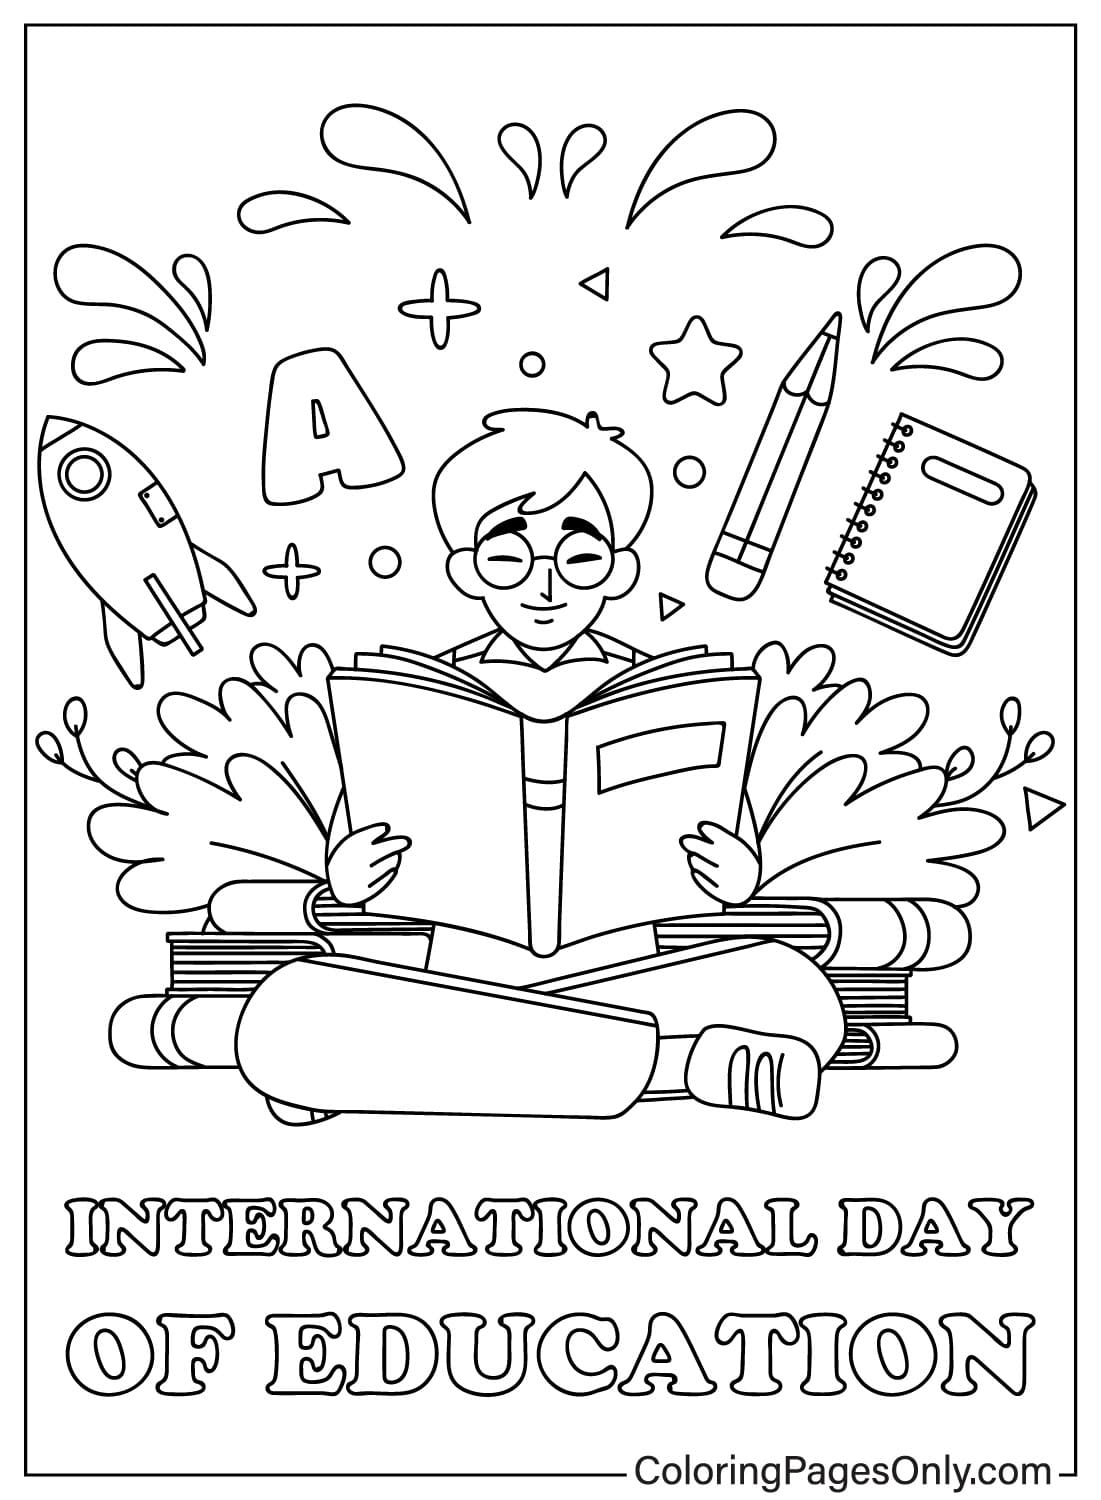 国际教育日可打印的国际教育日彩页